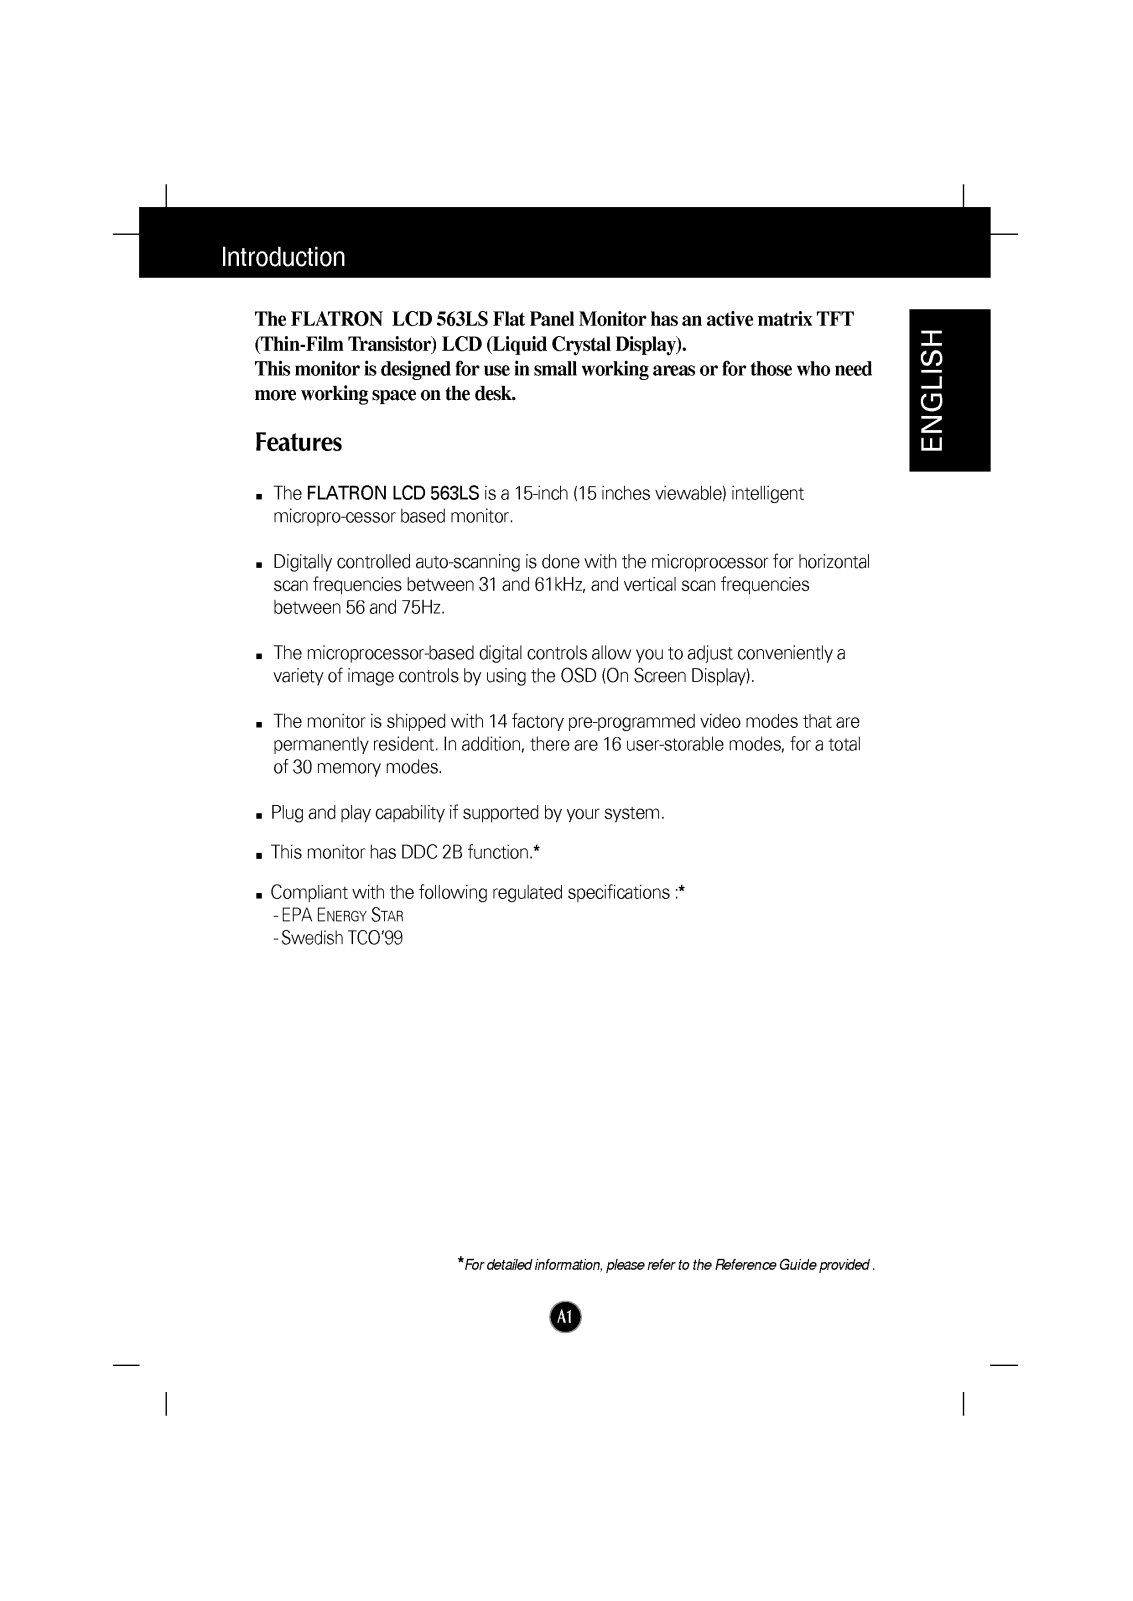 LG FLATRON LCD 563LS-LB563B-EA User Manual